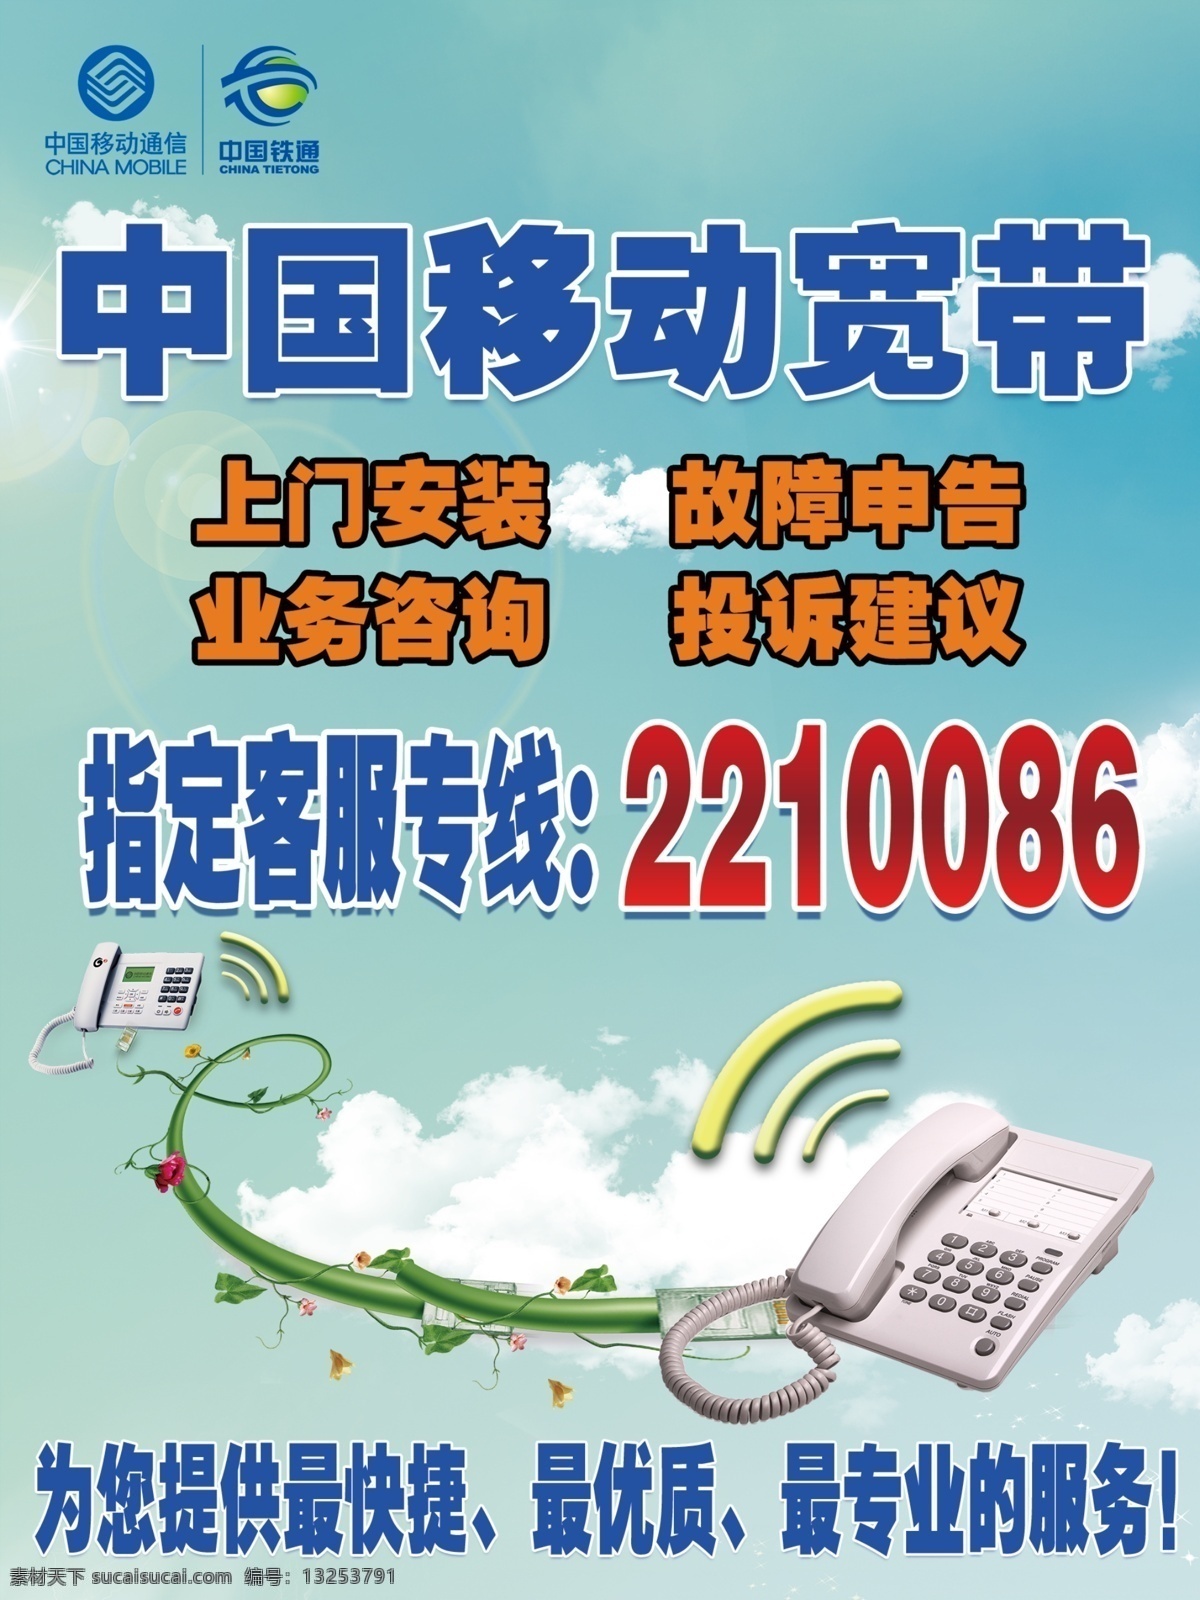 中国移动 宽带 指定 客 服 客服热线 电话 海报 广告设计模板 源文件